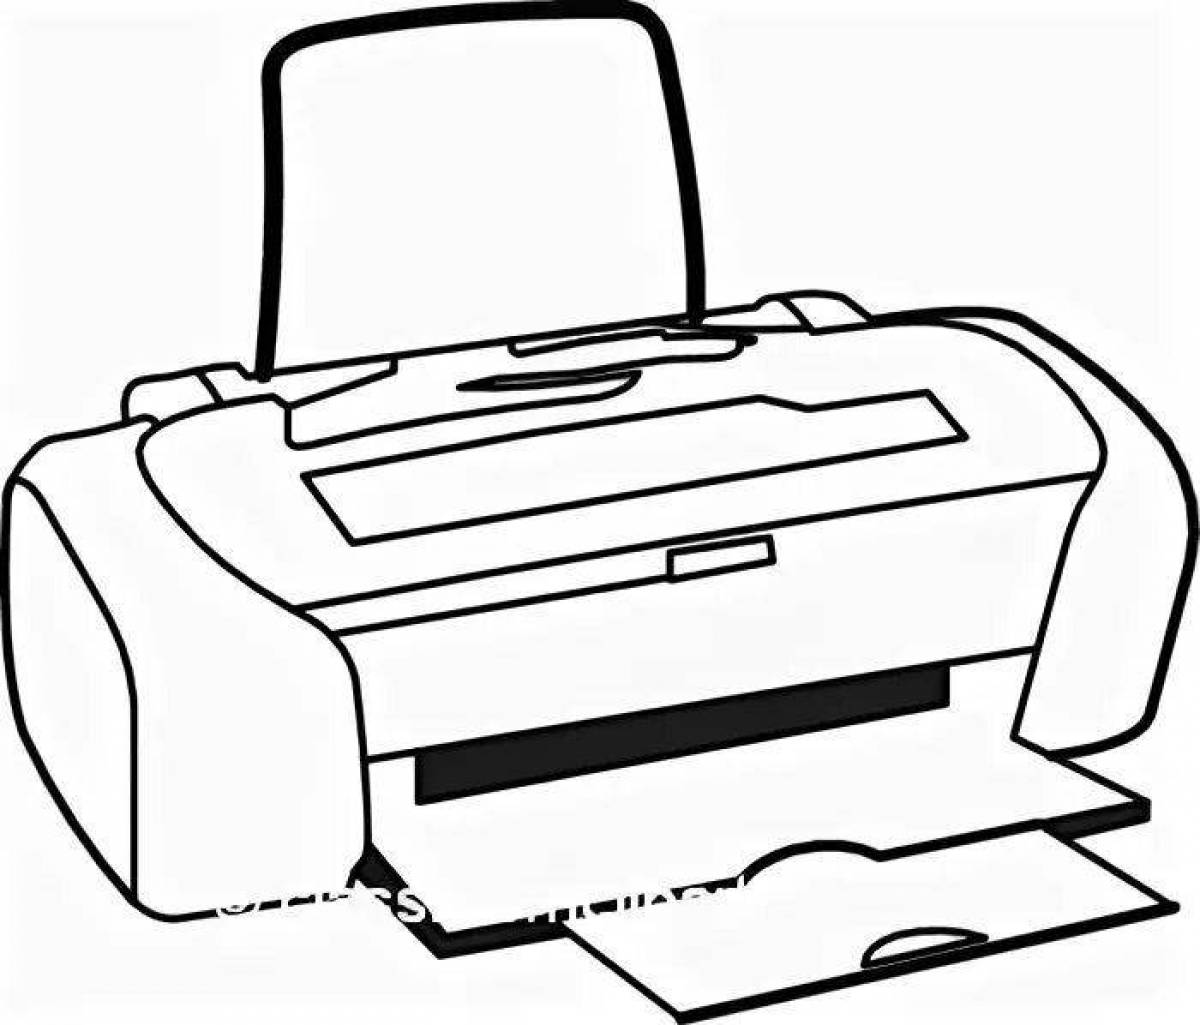 Юмористическая раскраска принтера